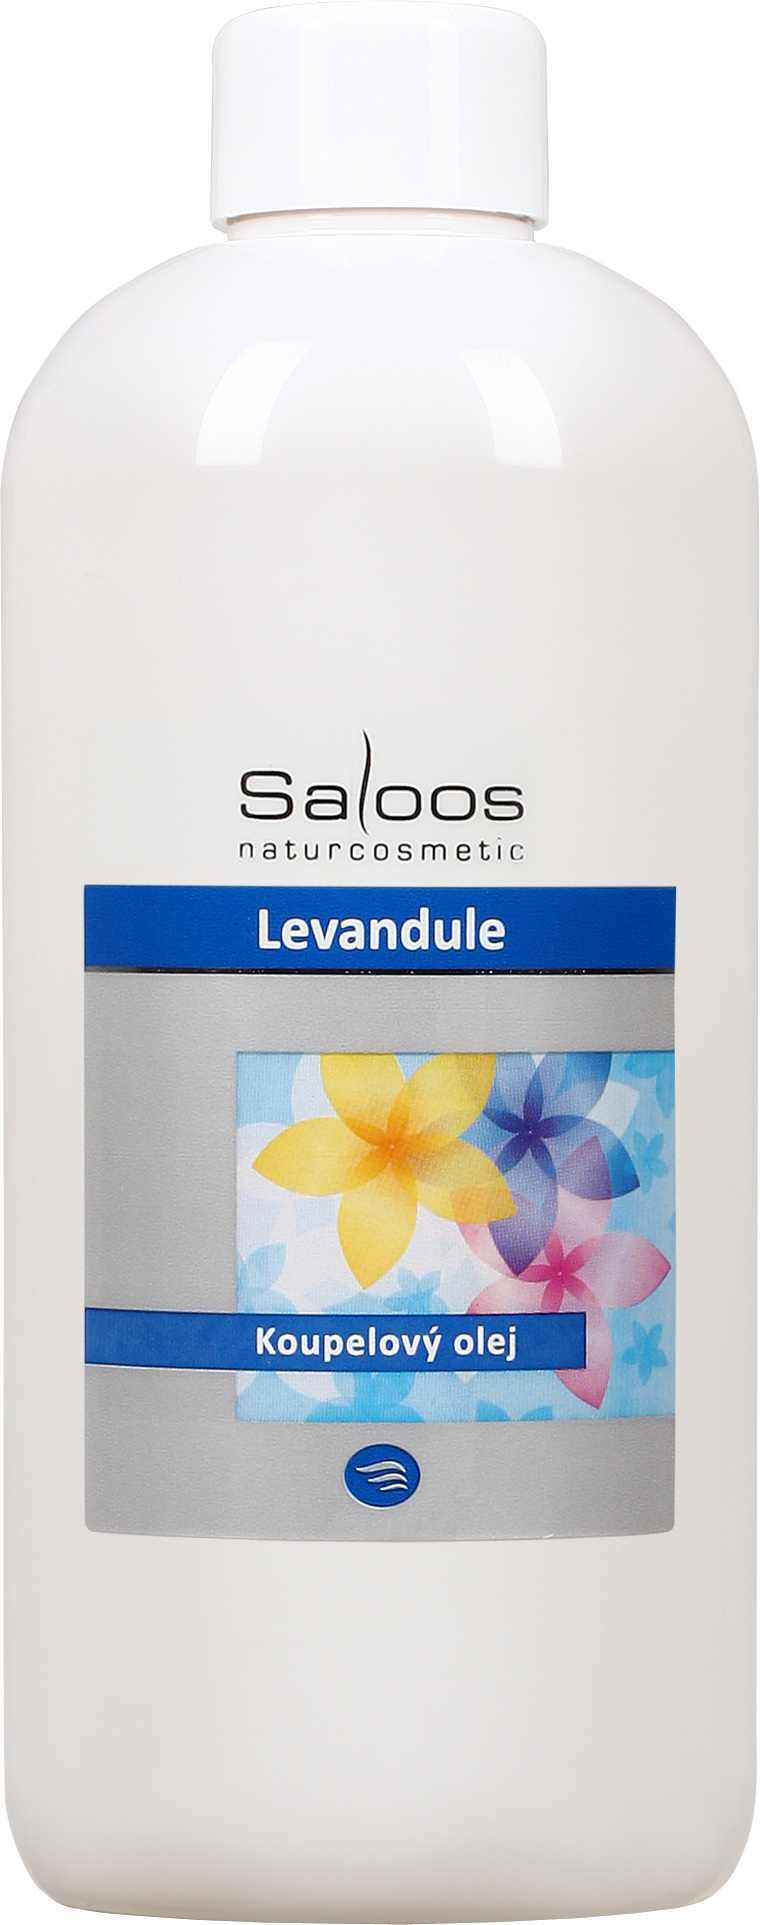 Saloos Levandule - koupelový olej Balení: 500 ml